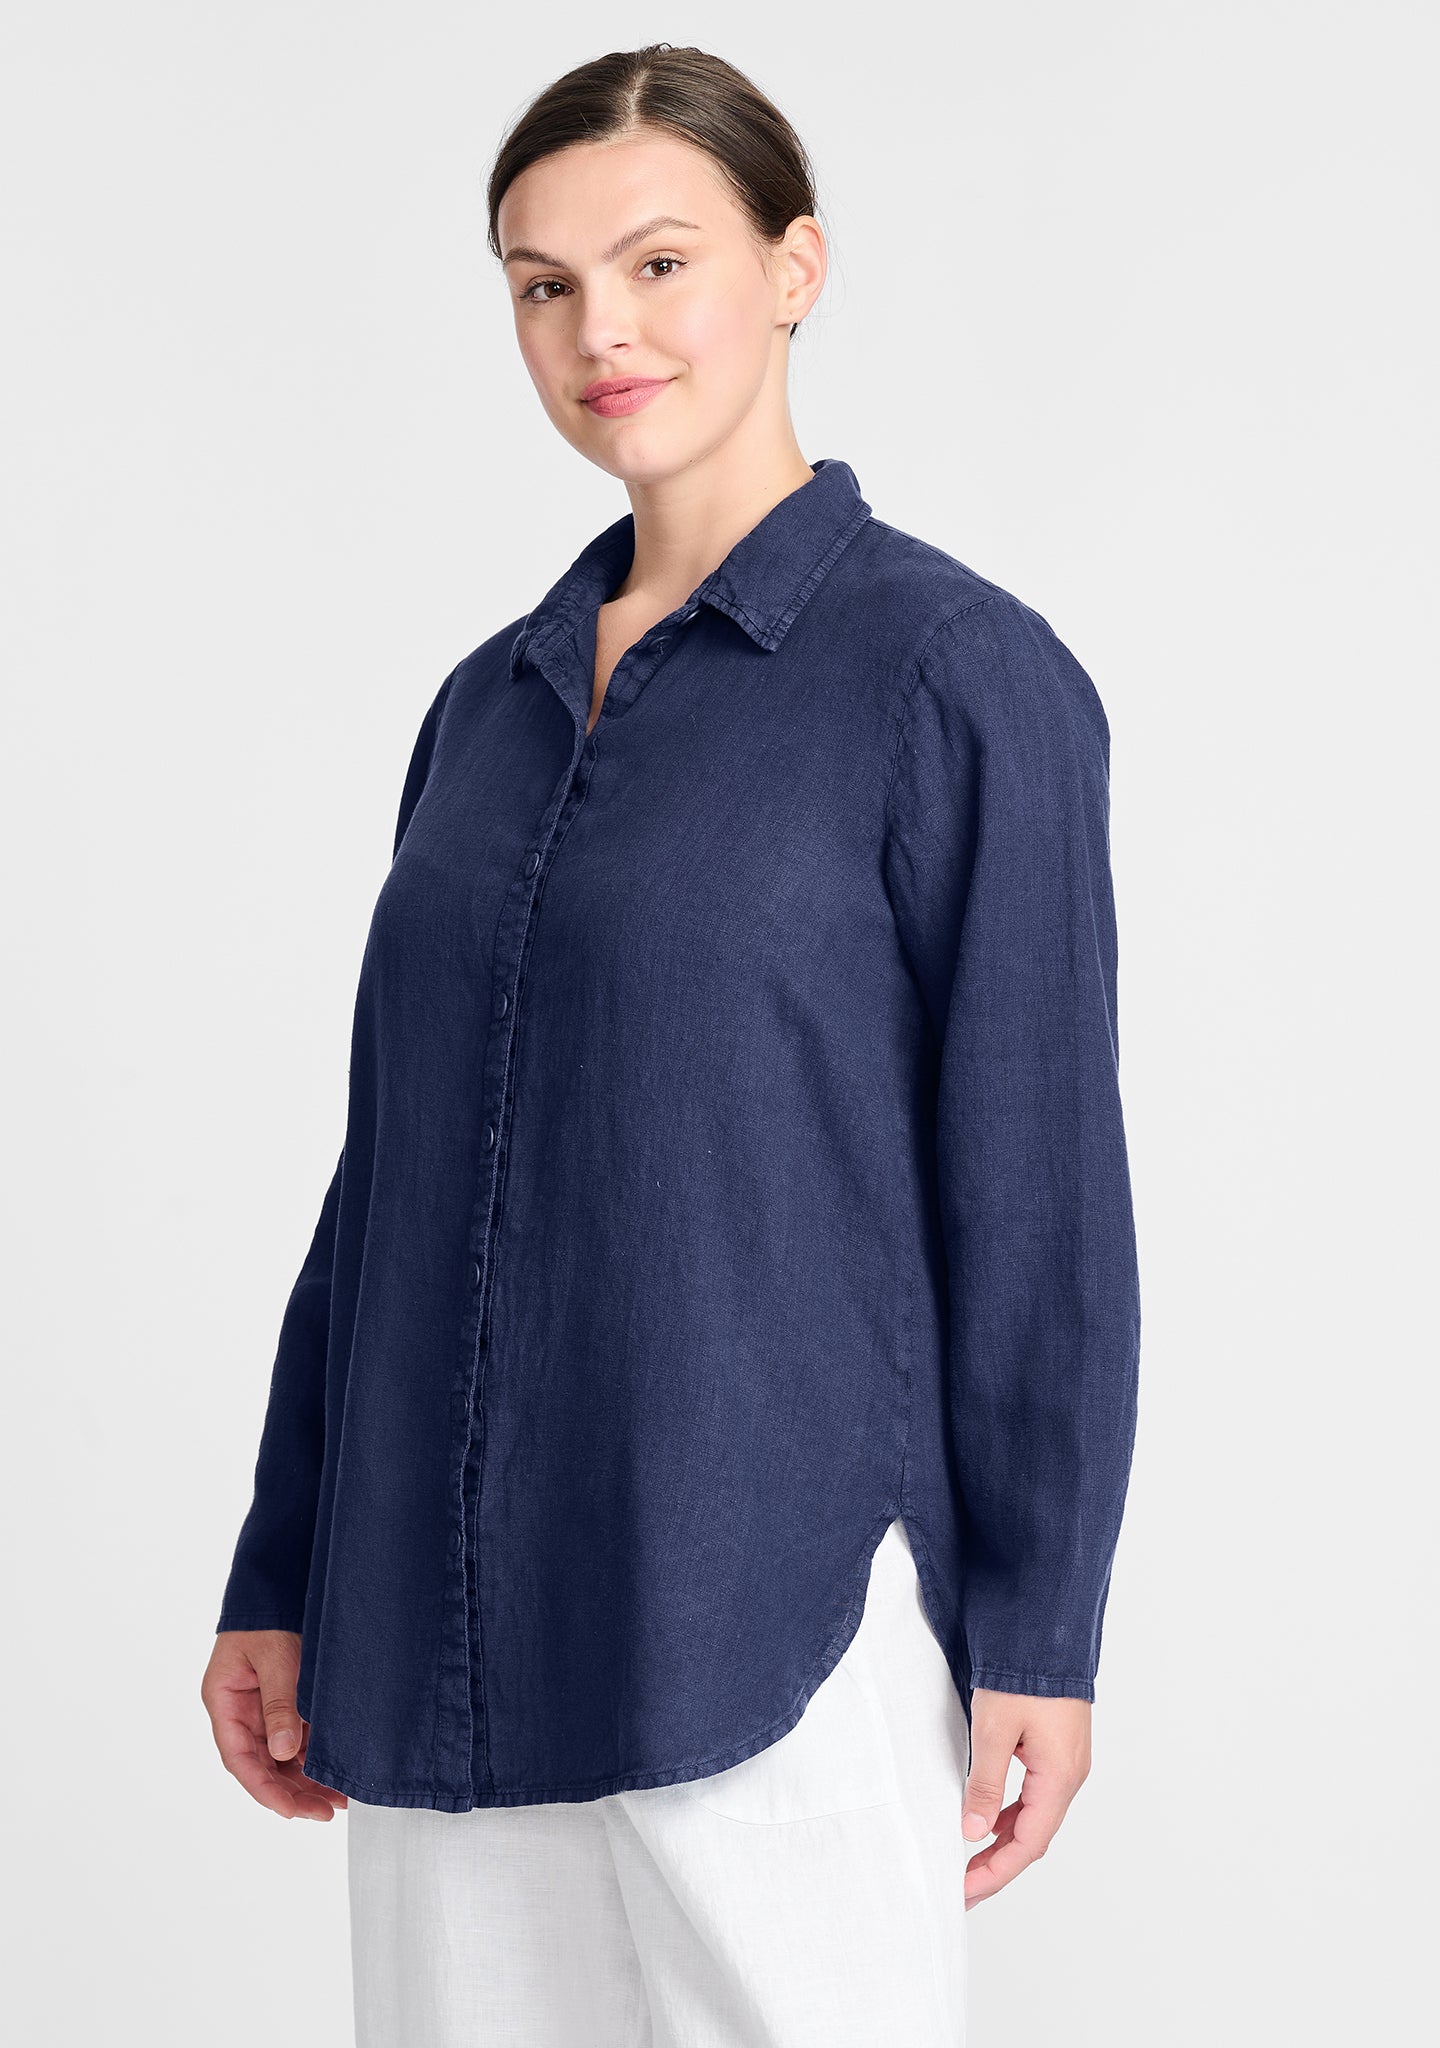 crossroads blouse linen button down shirt blue